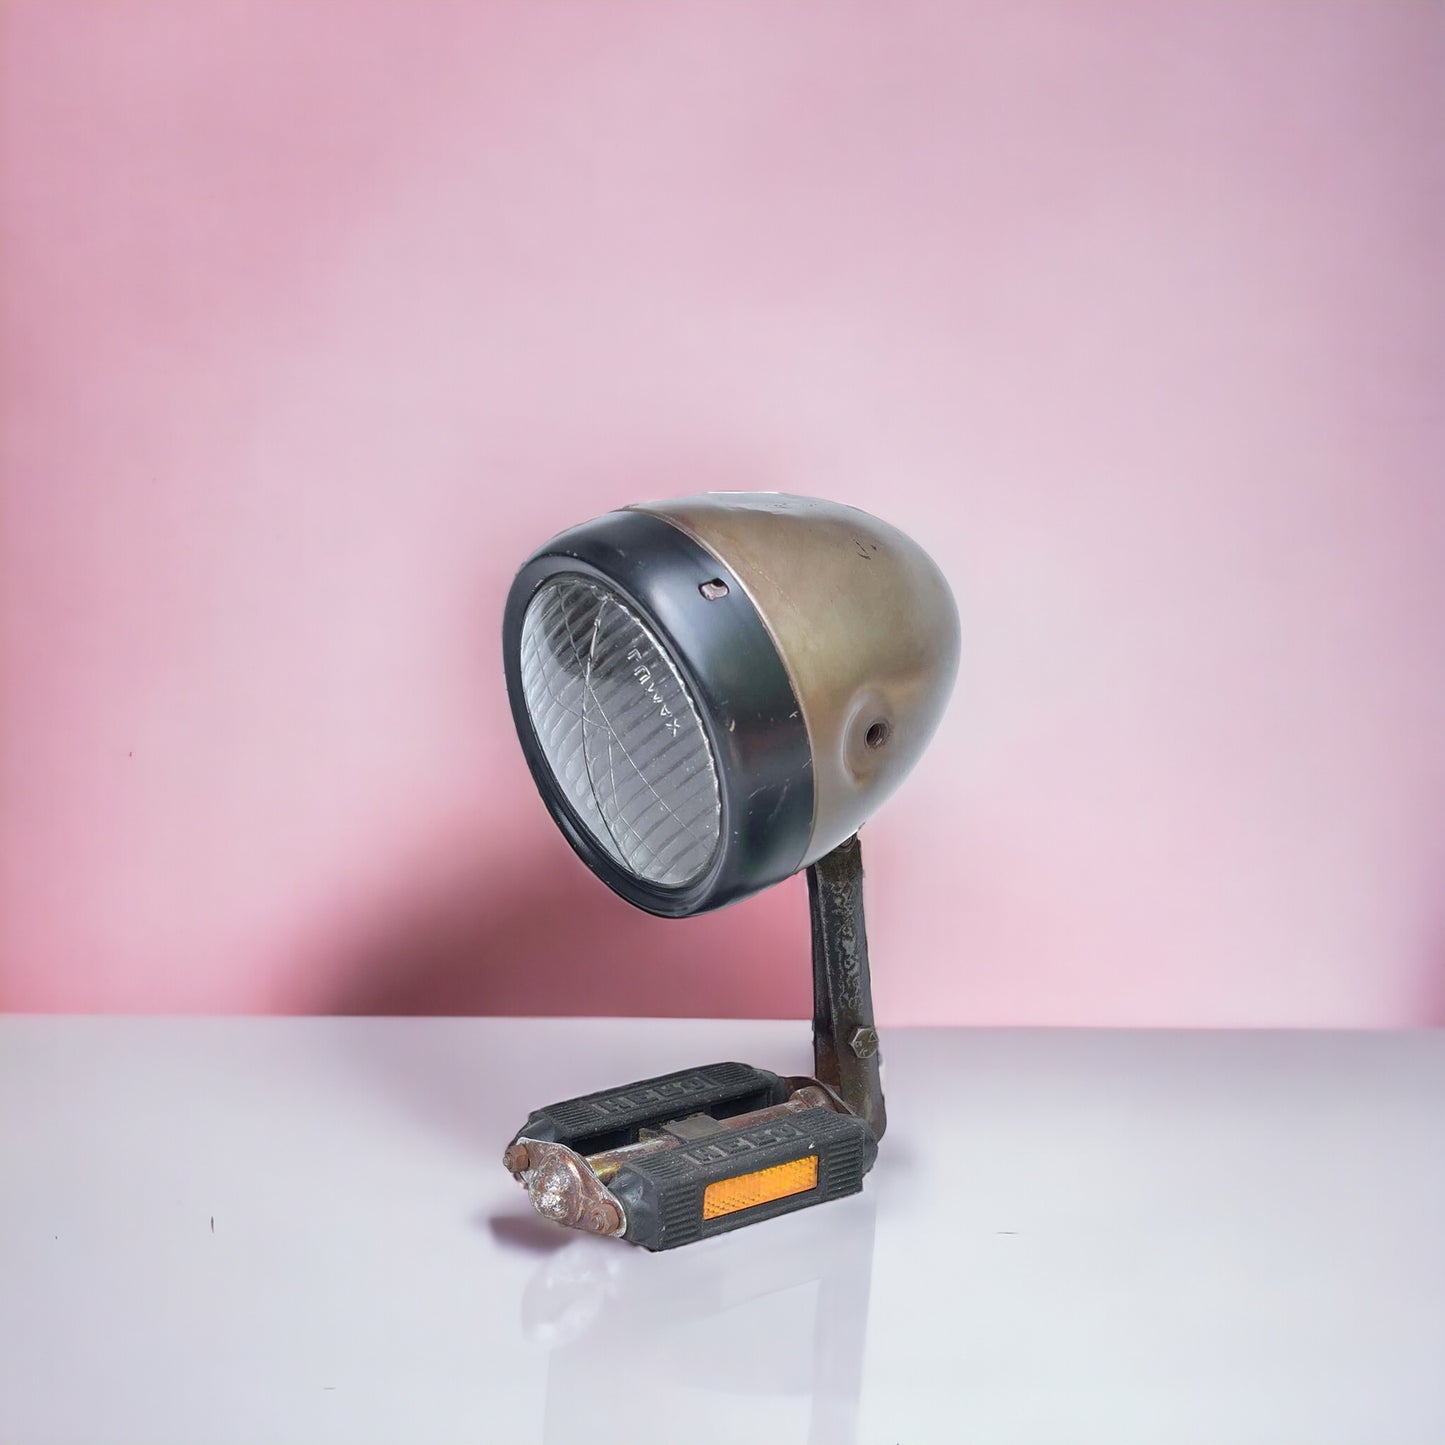 Tischlampe "Vita" - Upcycling aus altem Mopedscheinwerfer 24 x 15 cm mit Schalter